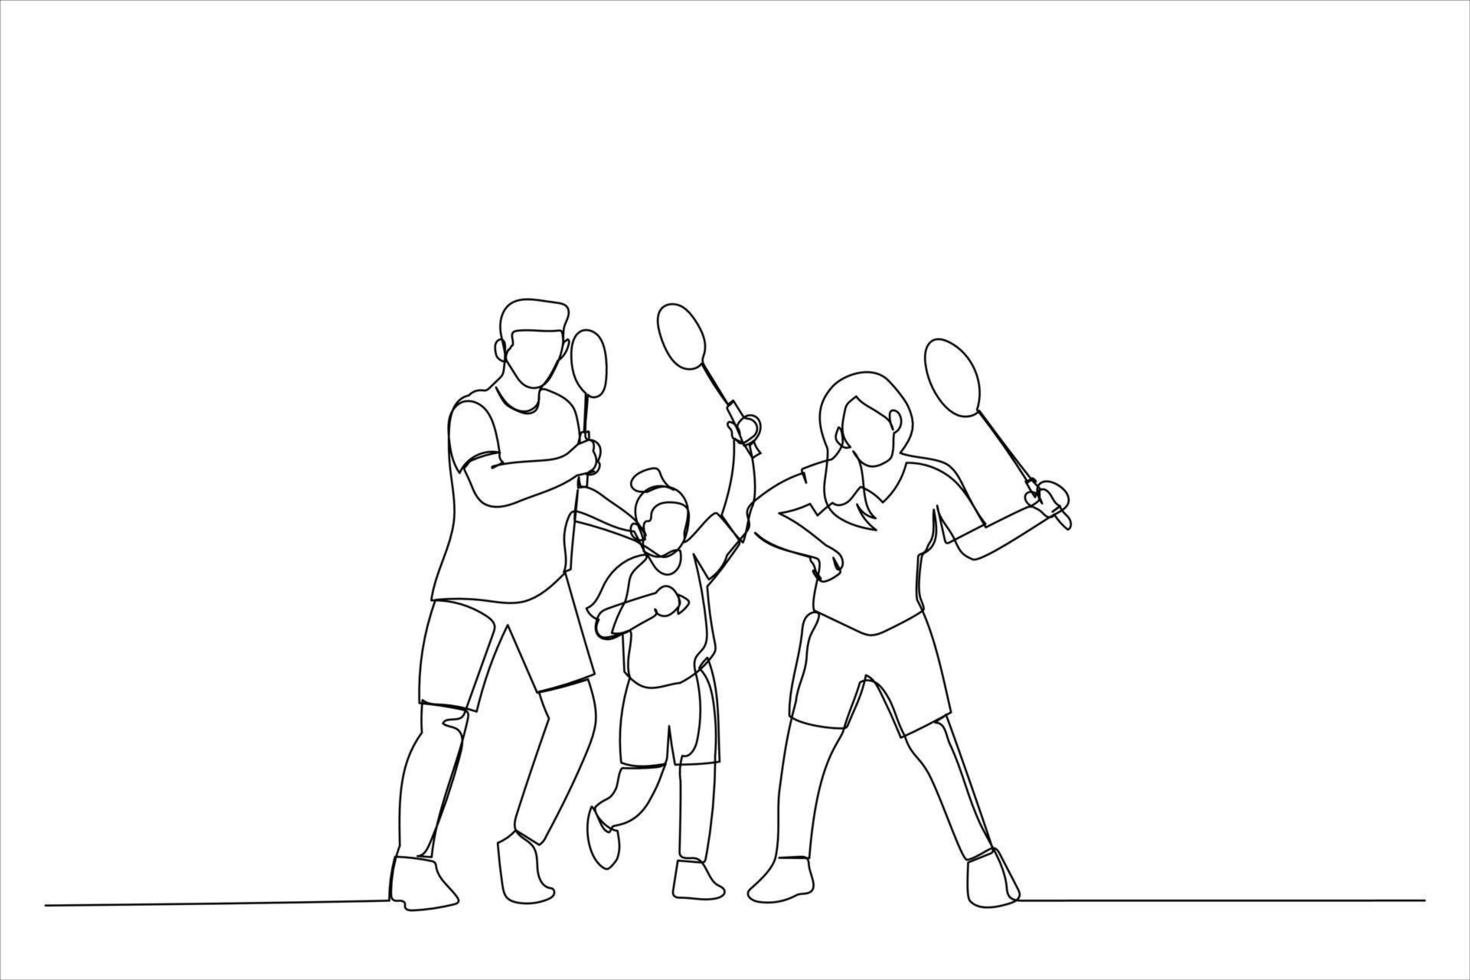 dessin de famille avec raquettes de badminton et volant. dessin au trait continu unique vecteur